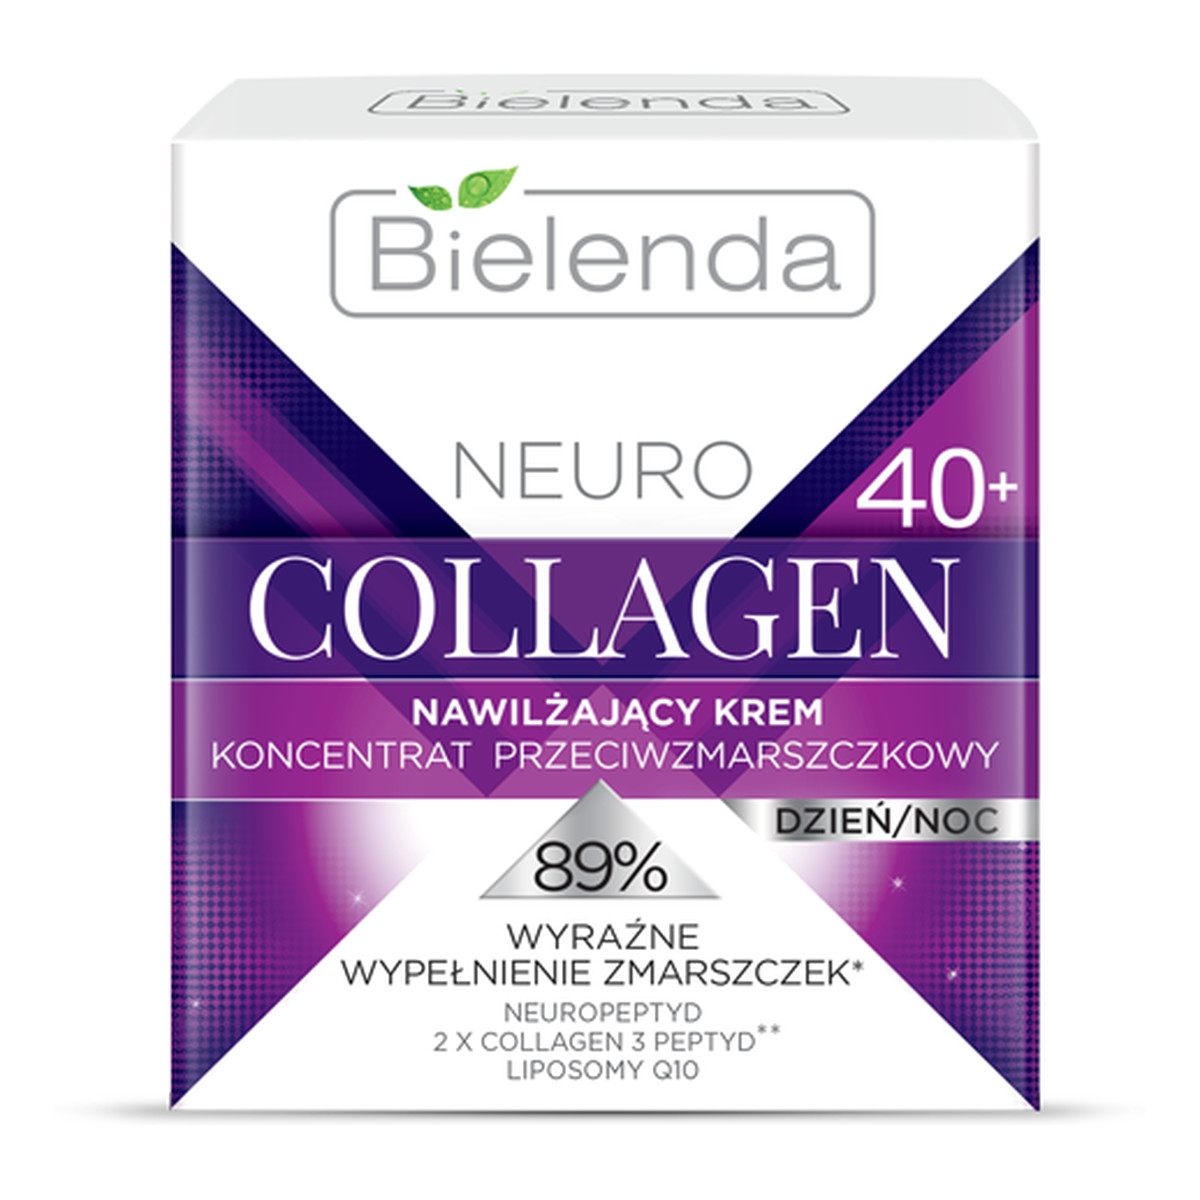 Bielenda Neuro Collagen Nawilżający Krem – Koncentrat Przeciwzmarszczkowy 40+ Dzień/Noc 50ml